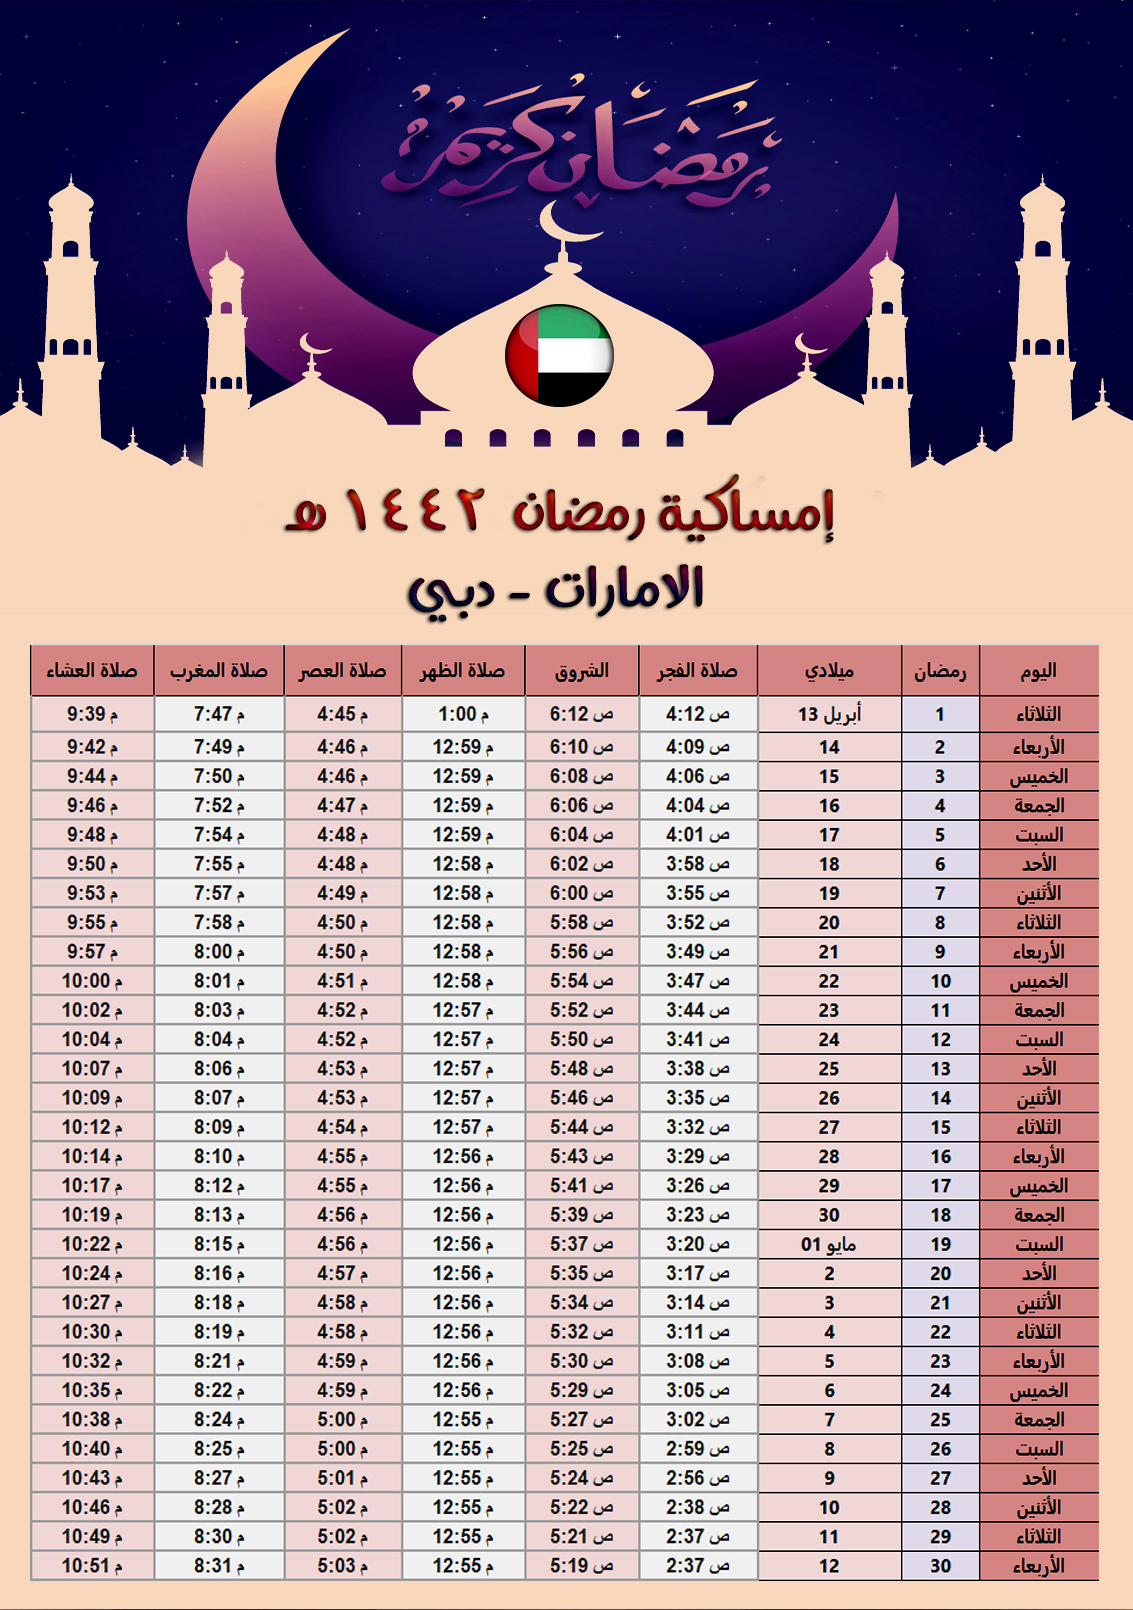 امساكية رمضان 2021 الامارات دبي تقويم 1442 هجري UAE Dubi Ramadan Imsakia